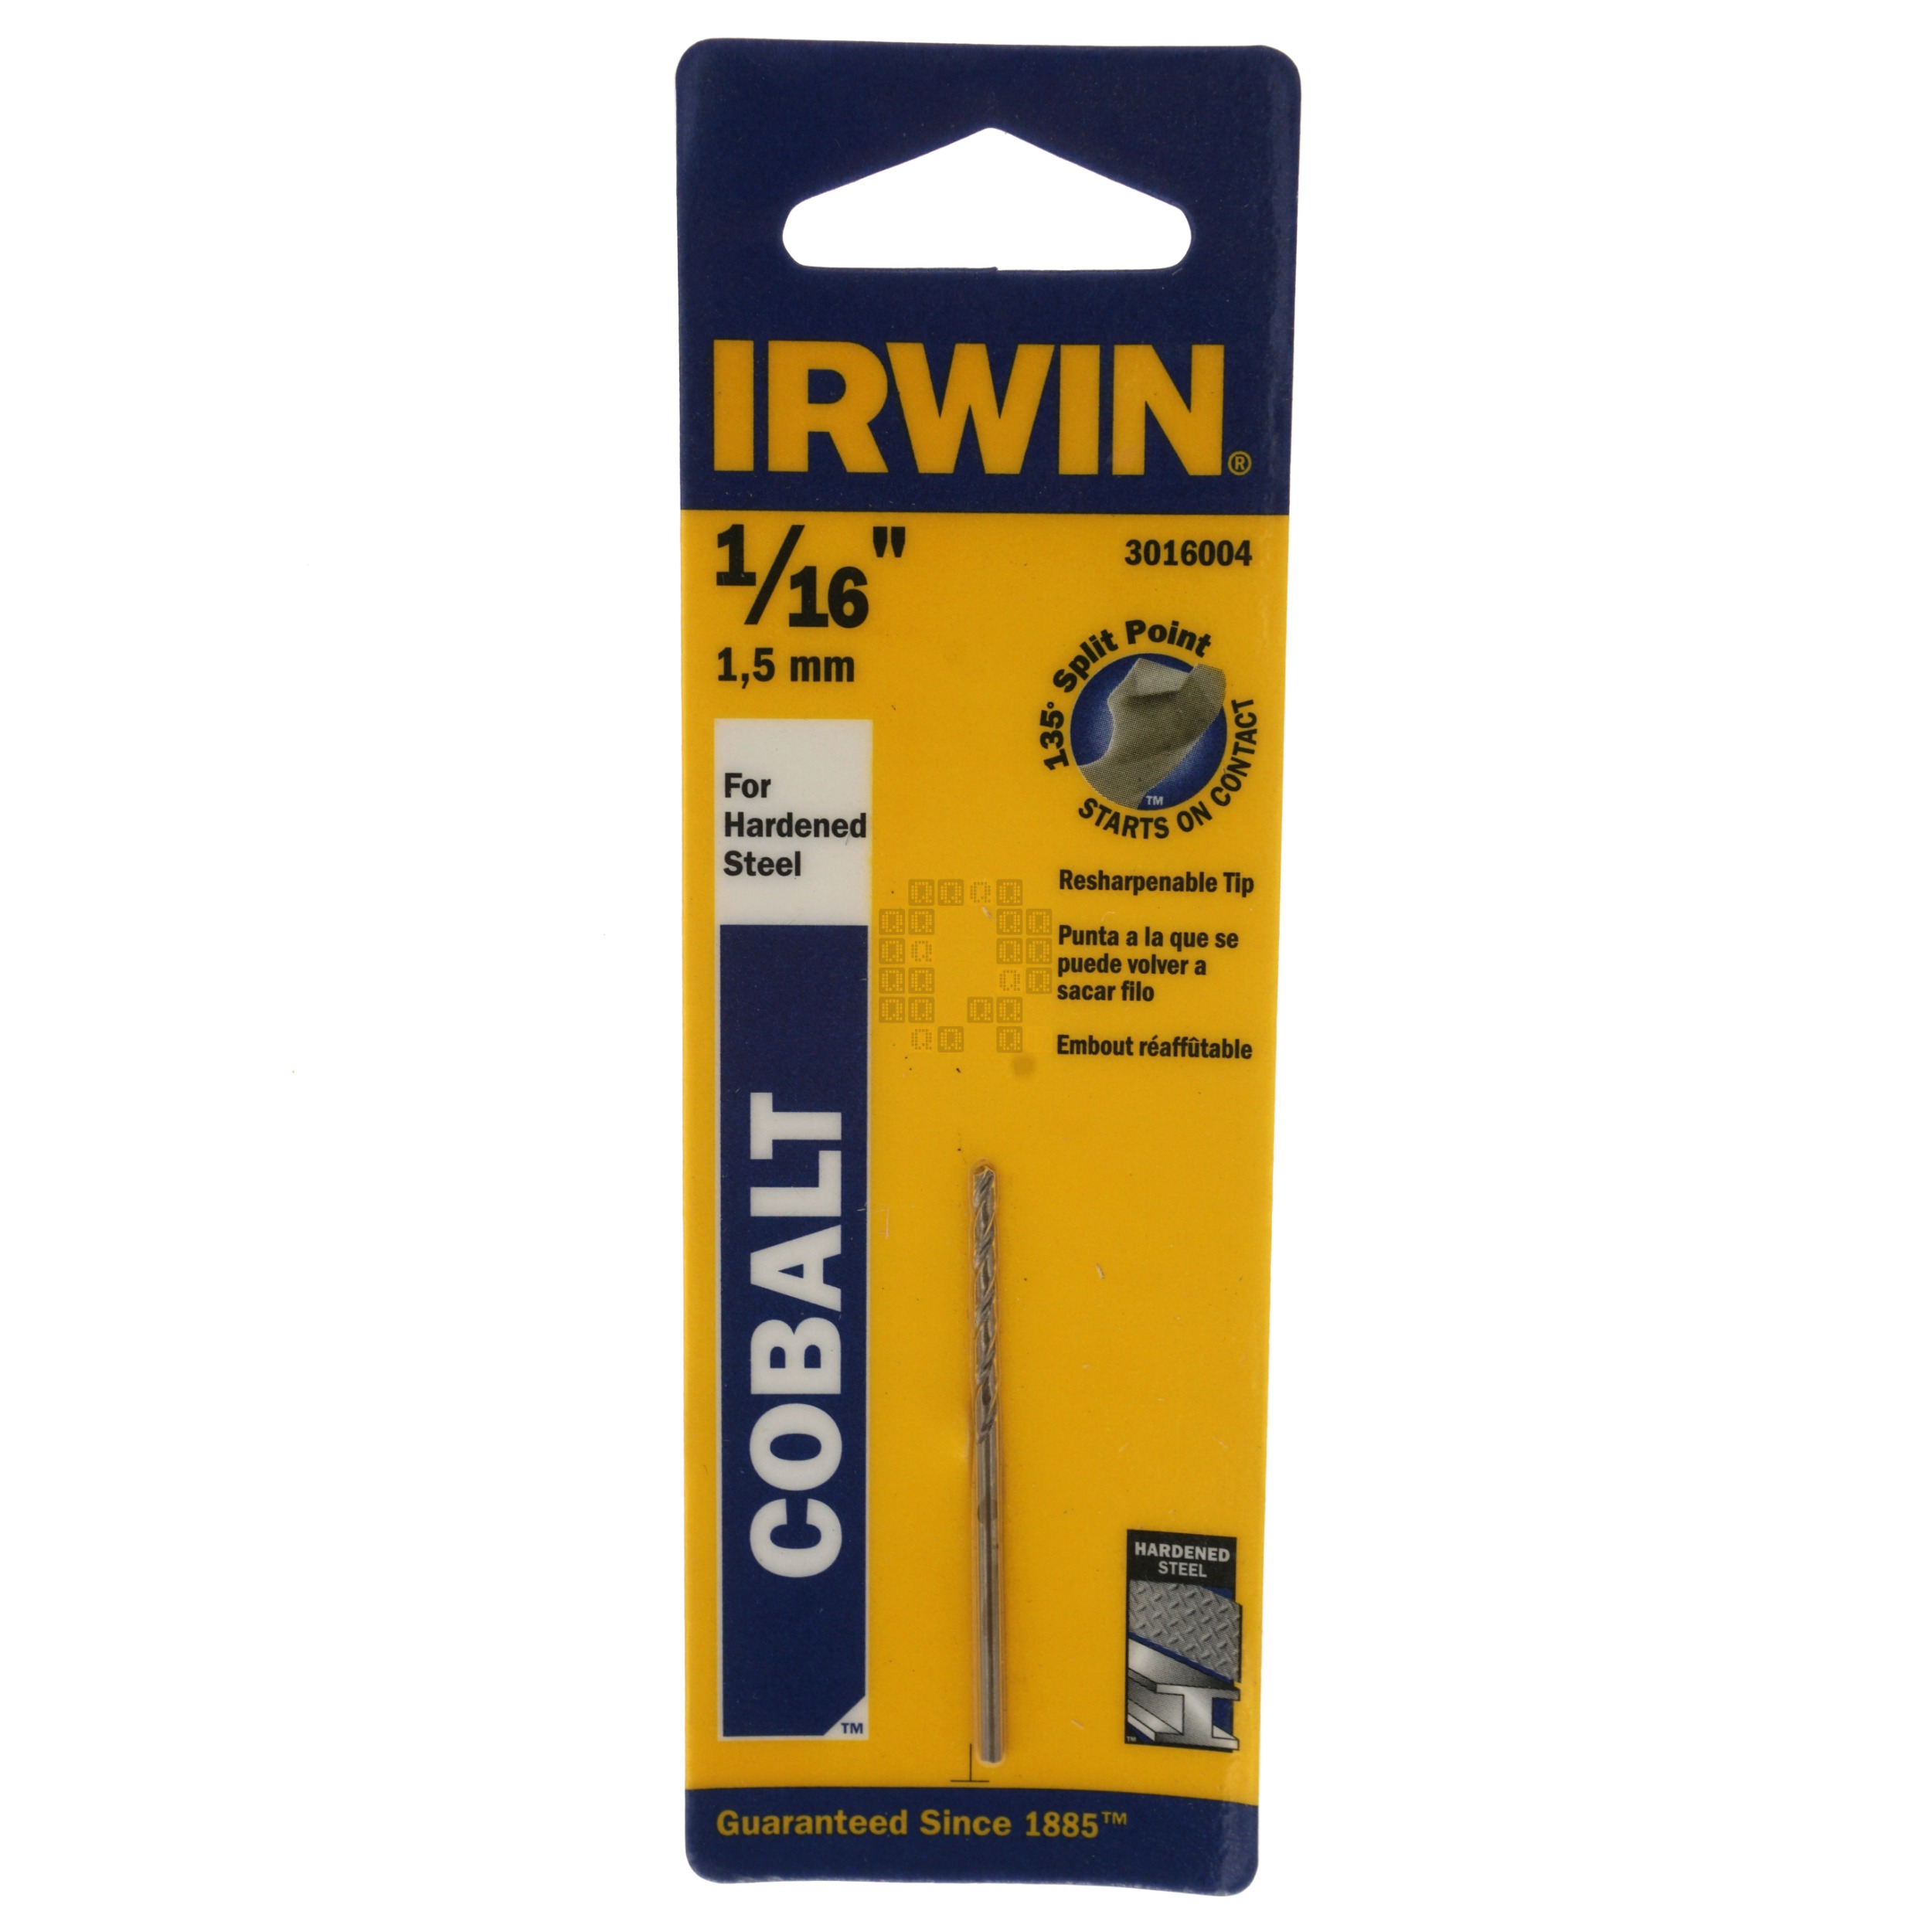 Irwin 3016004 Jobber Length 1/16" Cobalt Drill Bit, 135° Standard Tip